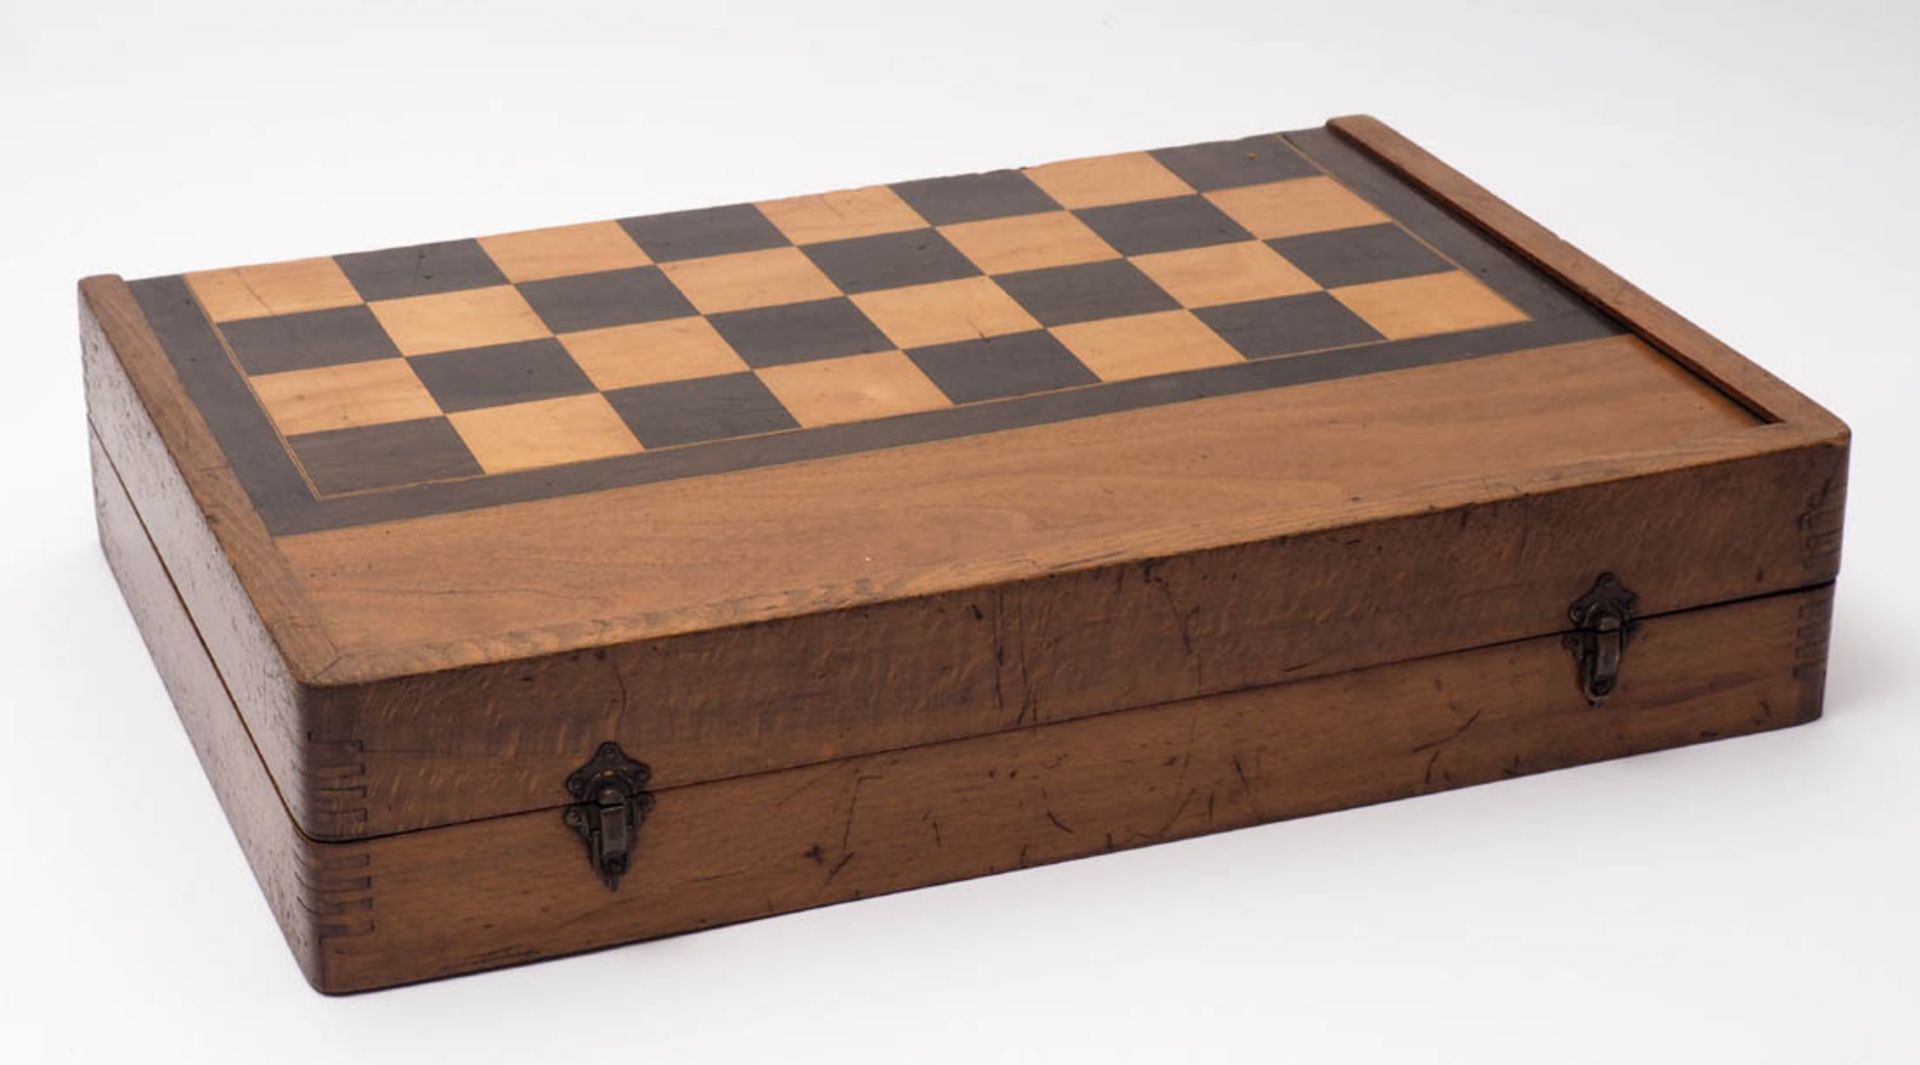 Spielkasten Schach und Backgammon. Mit Figuren, Spielsteinen und zwei Würfelbechern. Maße des - Image 2 of 2